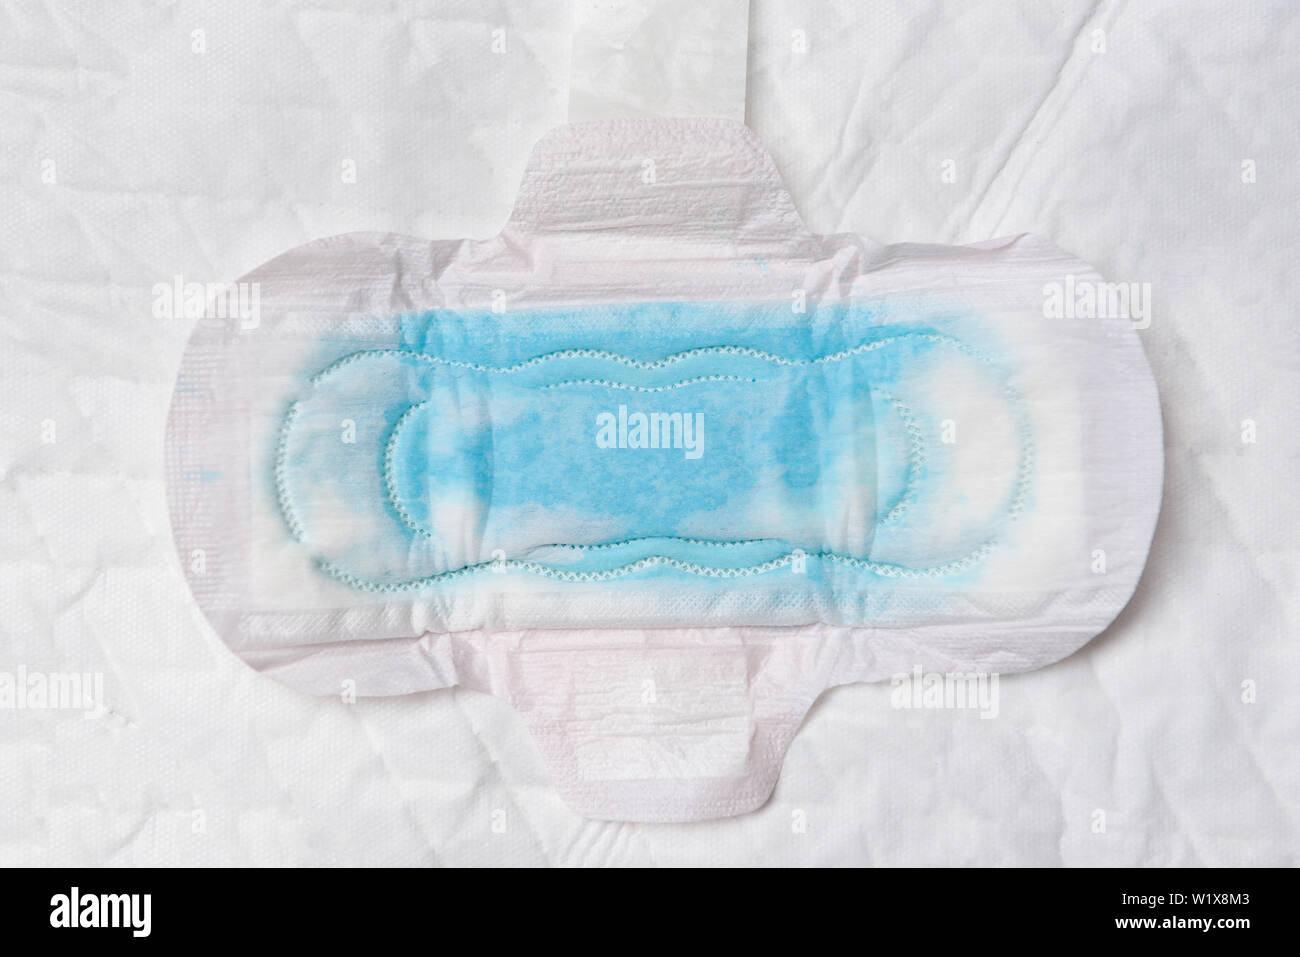 Serviette hygiénique ou tampon sanitaire féminin avec l'analyse de l'eau  bleu pour absorber de l'eau / moyens de l'hygiène féminine période femmes  Feuilles absorbantes pour produits Photo Stock - Alamy